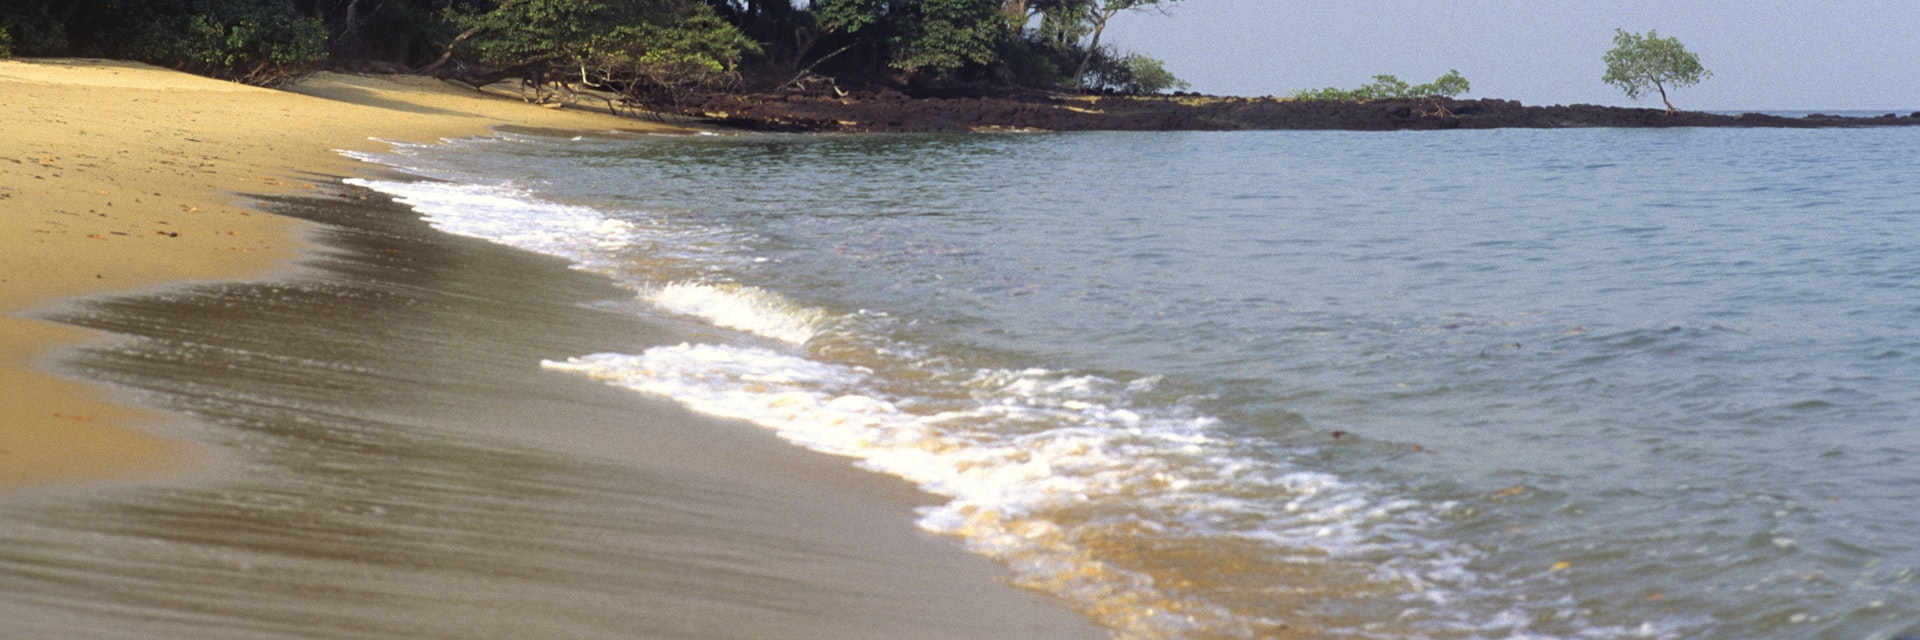 Africa, West Africa, Guinea-Bissau, Bijagos archipelago, Canhabaque island (or Roxa island), beach